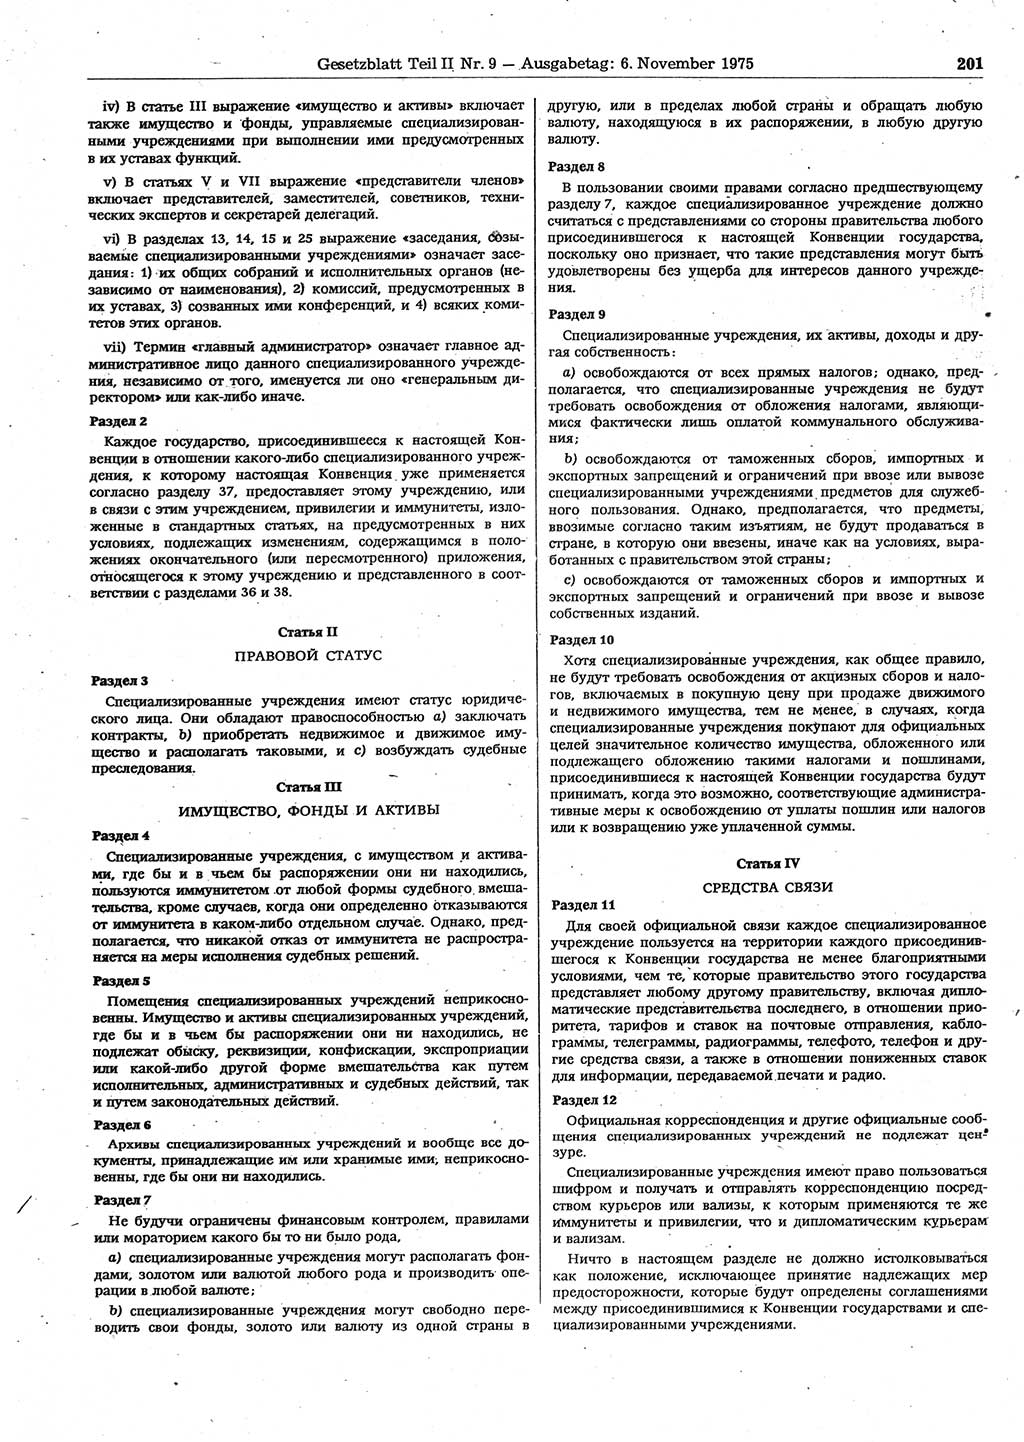 Gesetzblatt (GBl.) der Deutschen Demokratischen Republik (DDR) Teil ⅠⅠ 1975, Seite 201 (GBl. DDR ⅠⅠ 1975, S. 201)